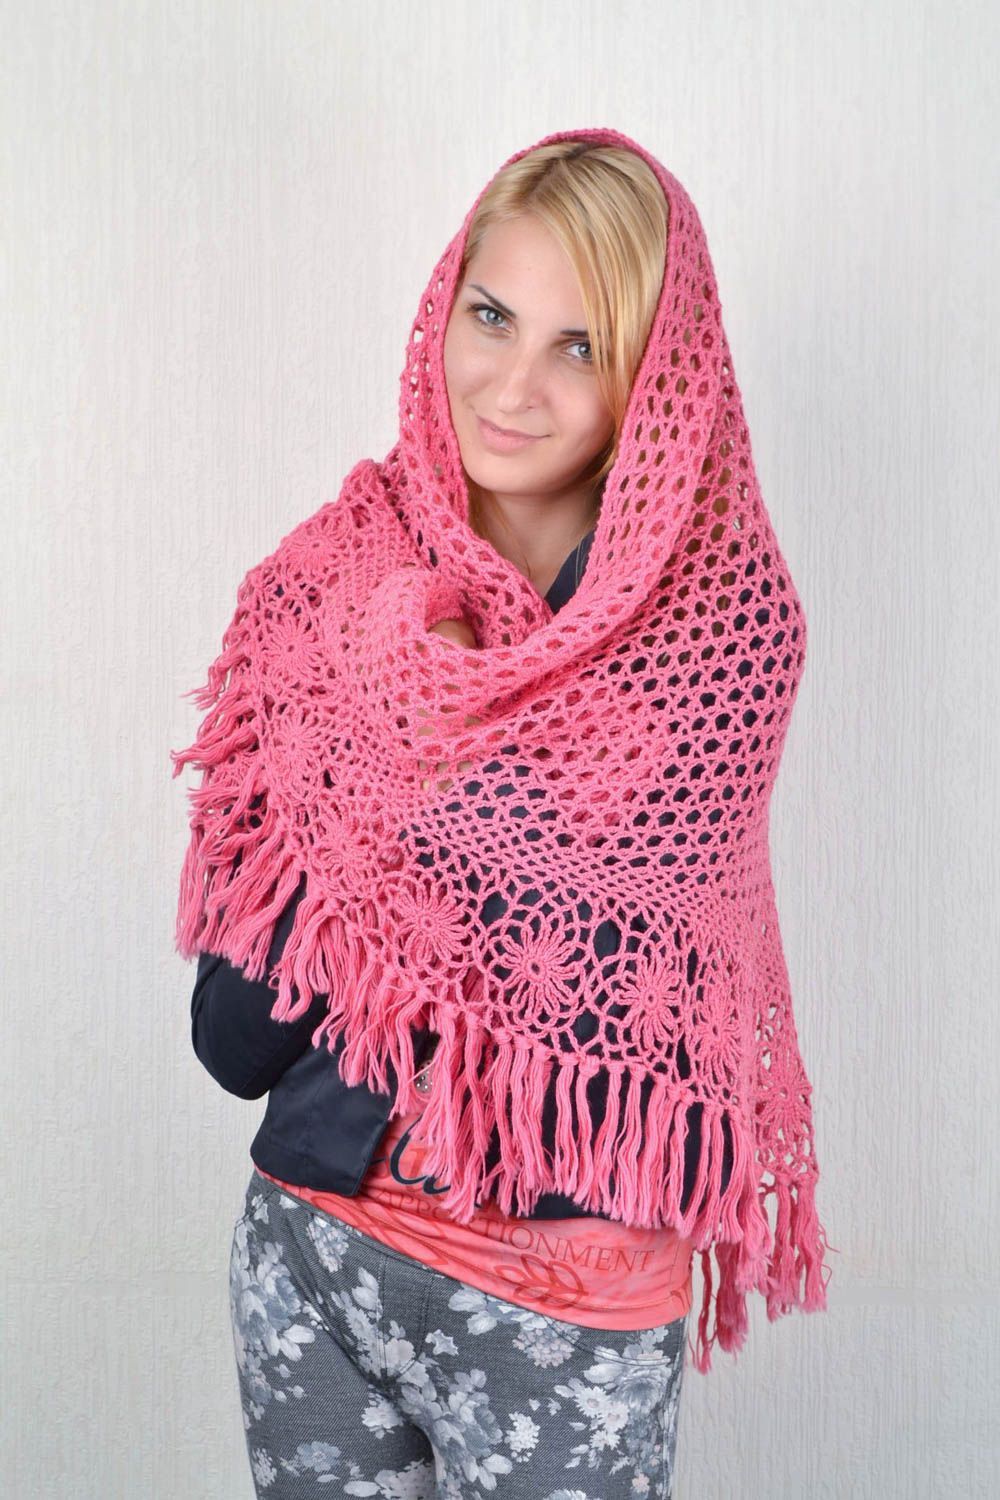 Handmade designer shawl unique winter stylish accessory present for women photo 1